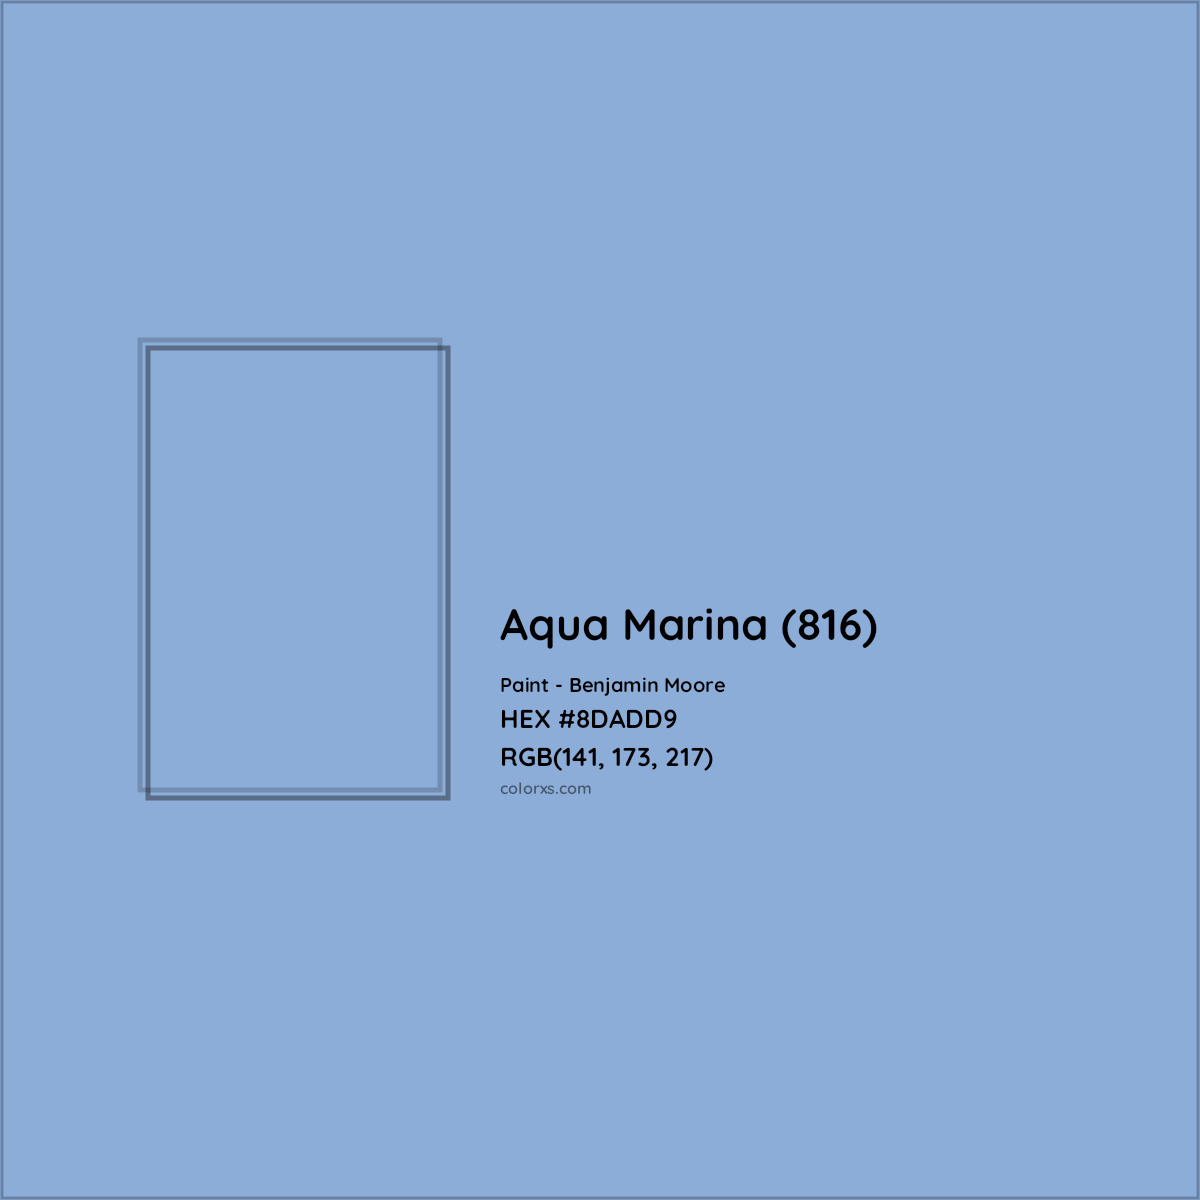 HEX #8DADD9 Aqua Marina (816) Paint Benjamin Moore - Color Code